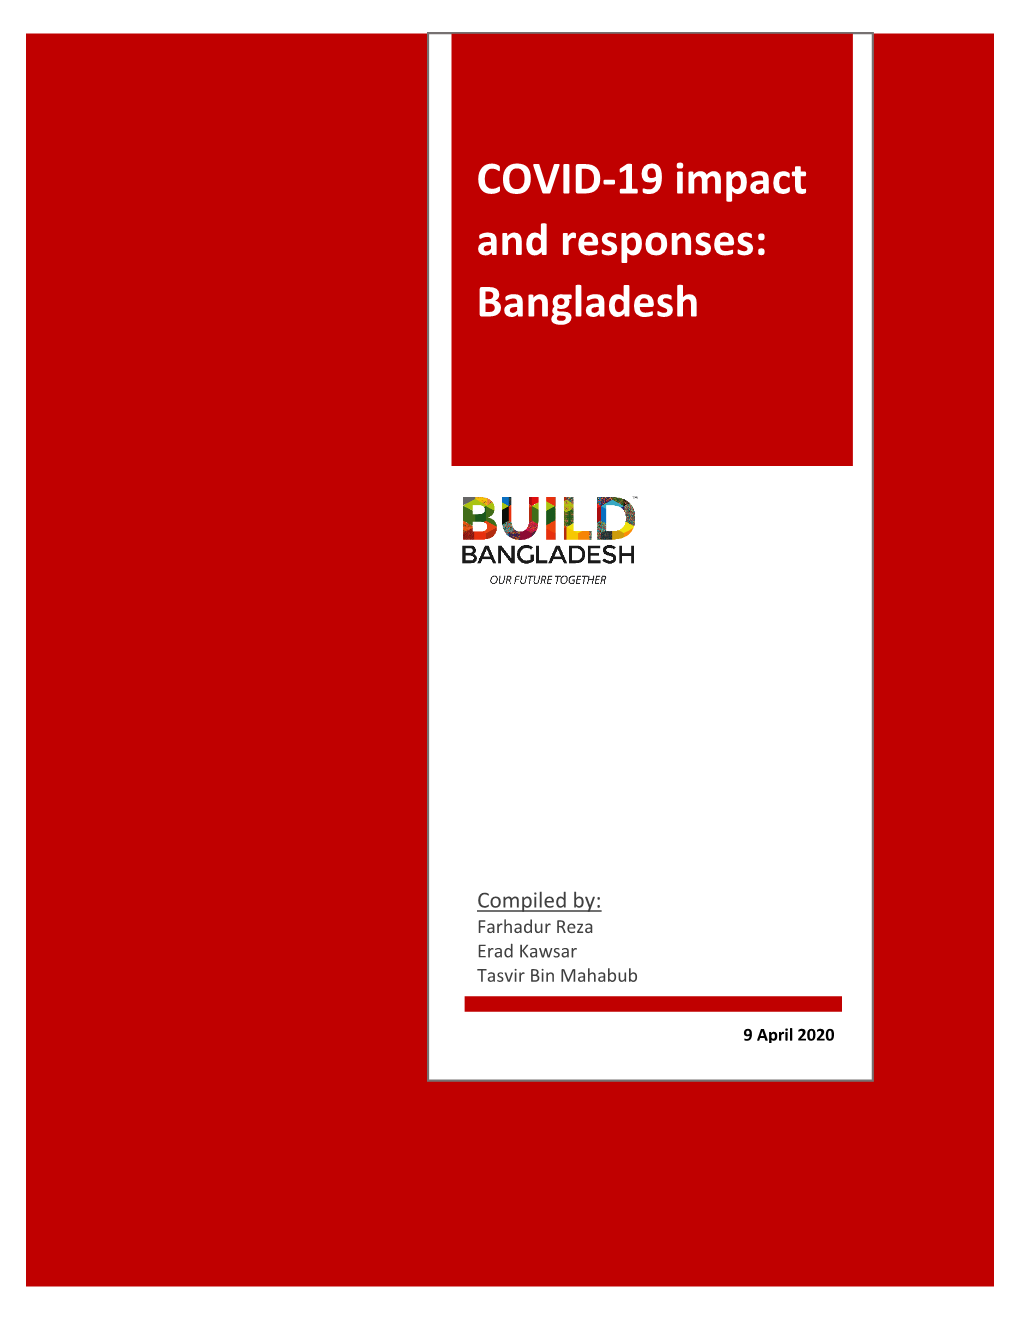 COVID-19 Impact and Responses: Bangladesh